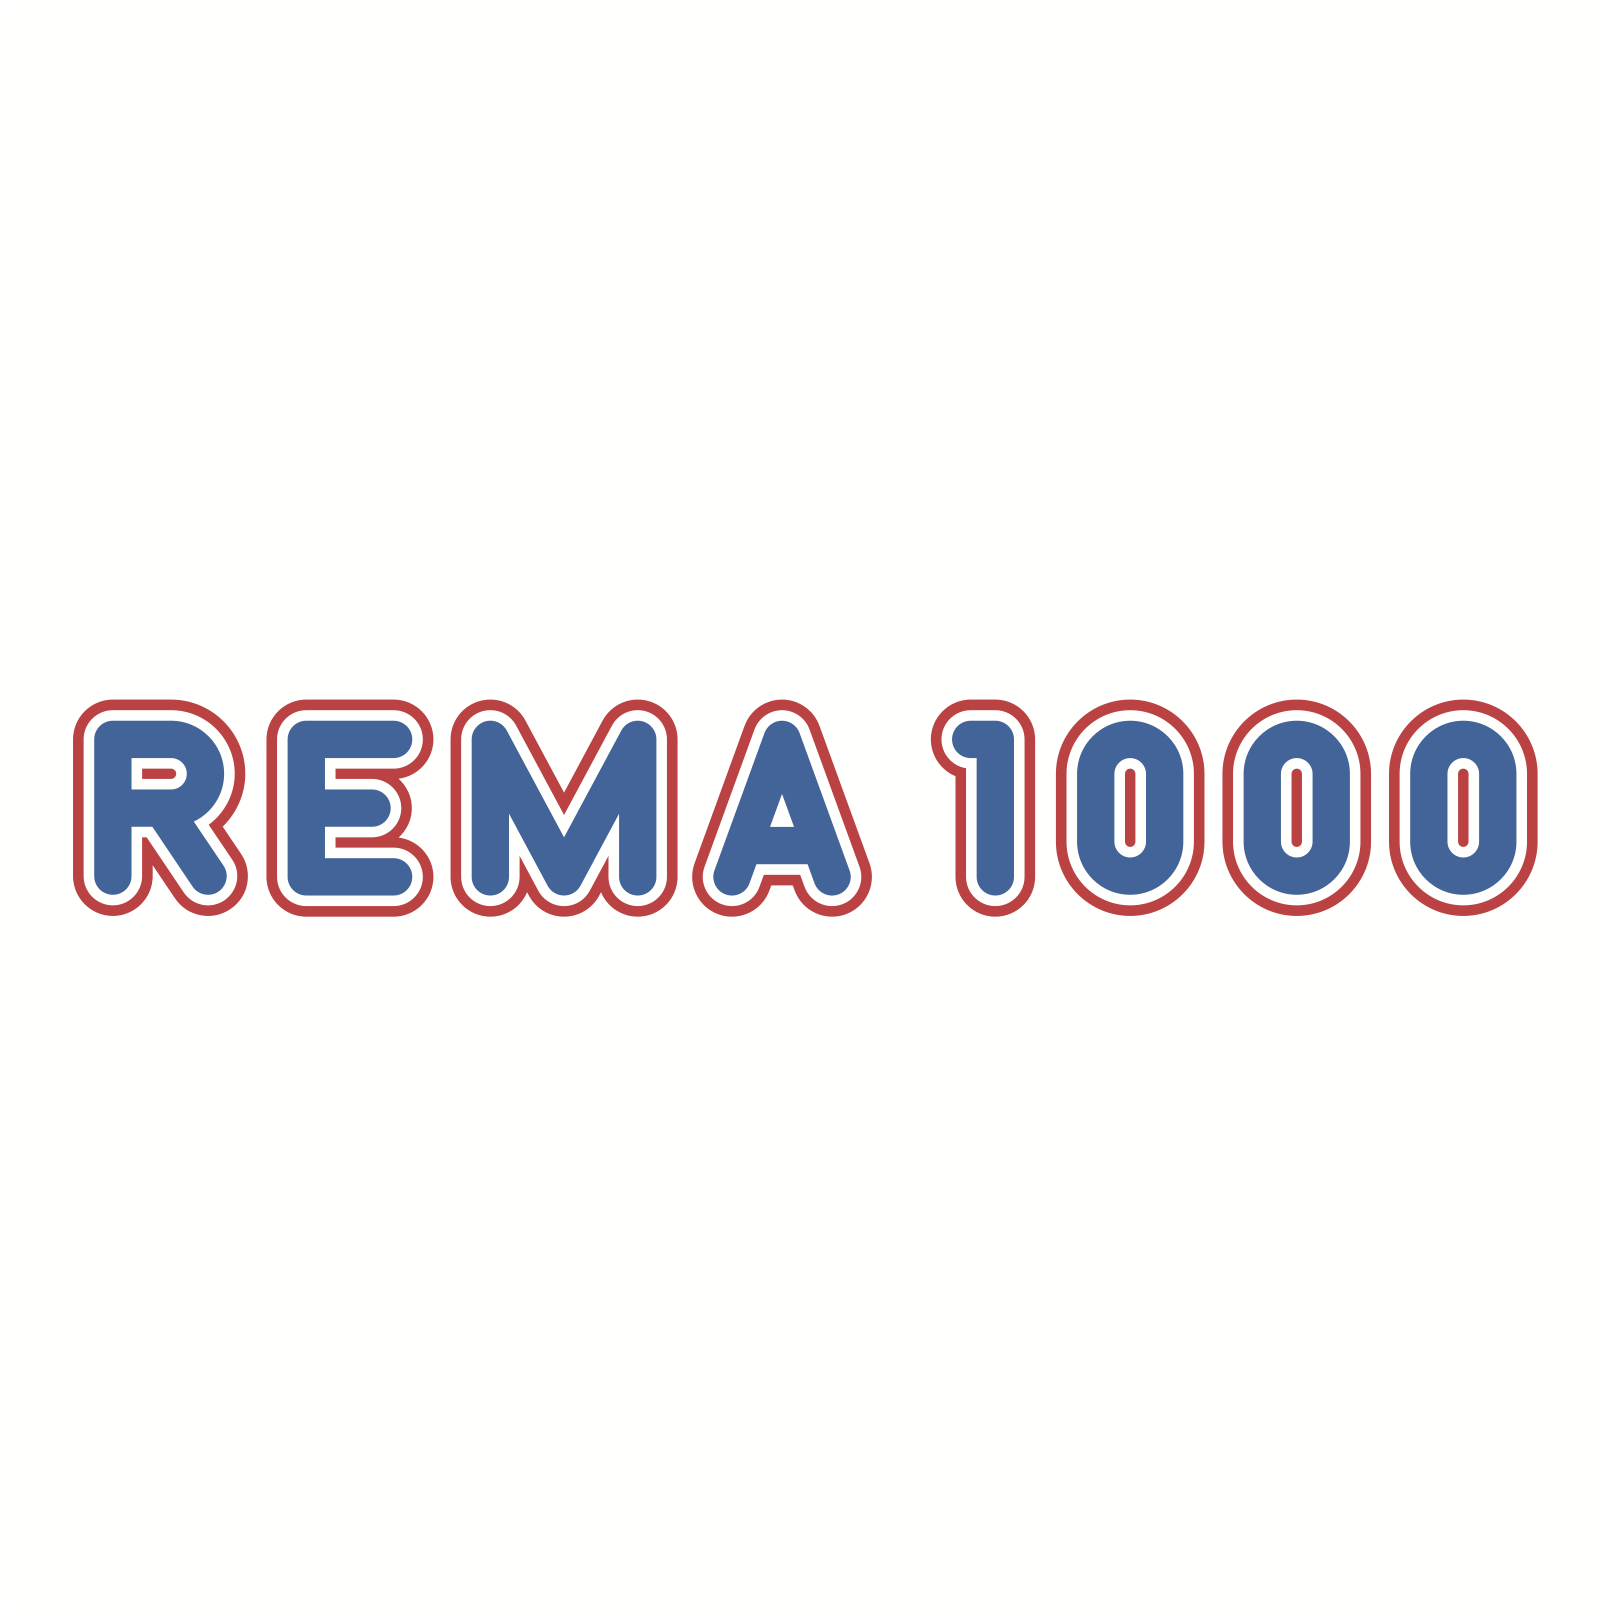 rema_1000